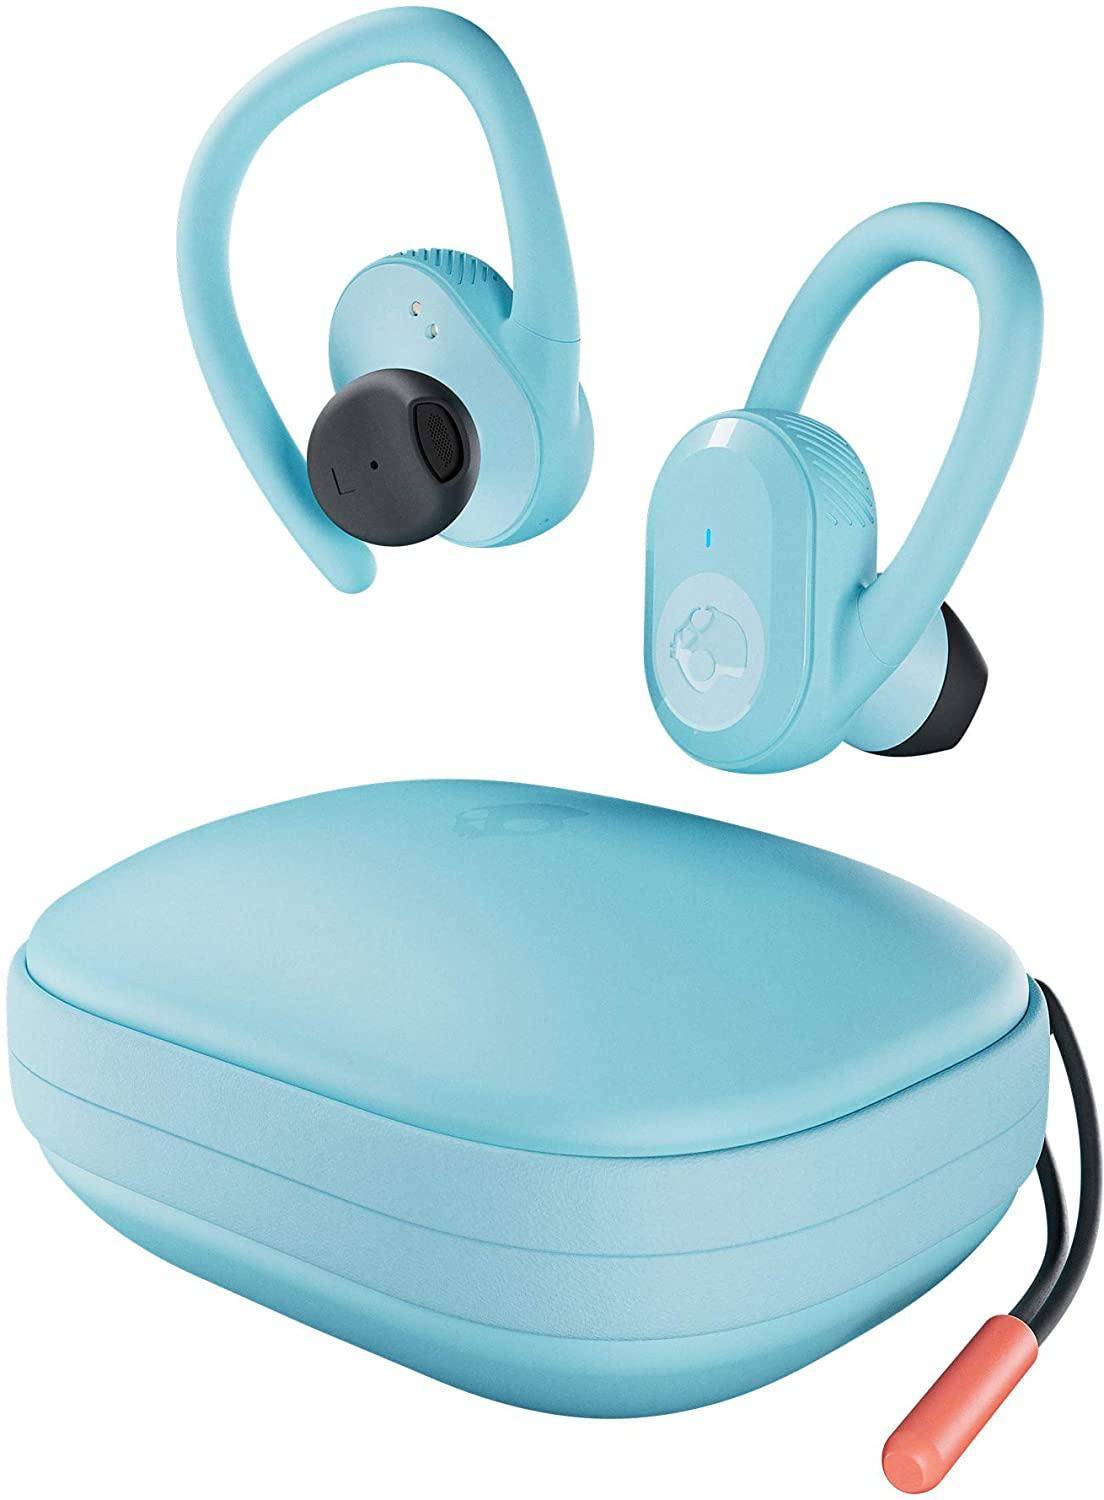 Skullcandy Push Ultra True Wireless In-Ear Sports Earbuds  zoom image